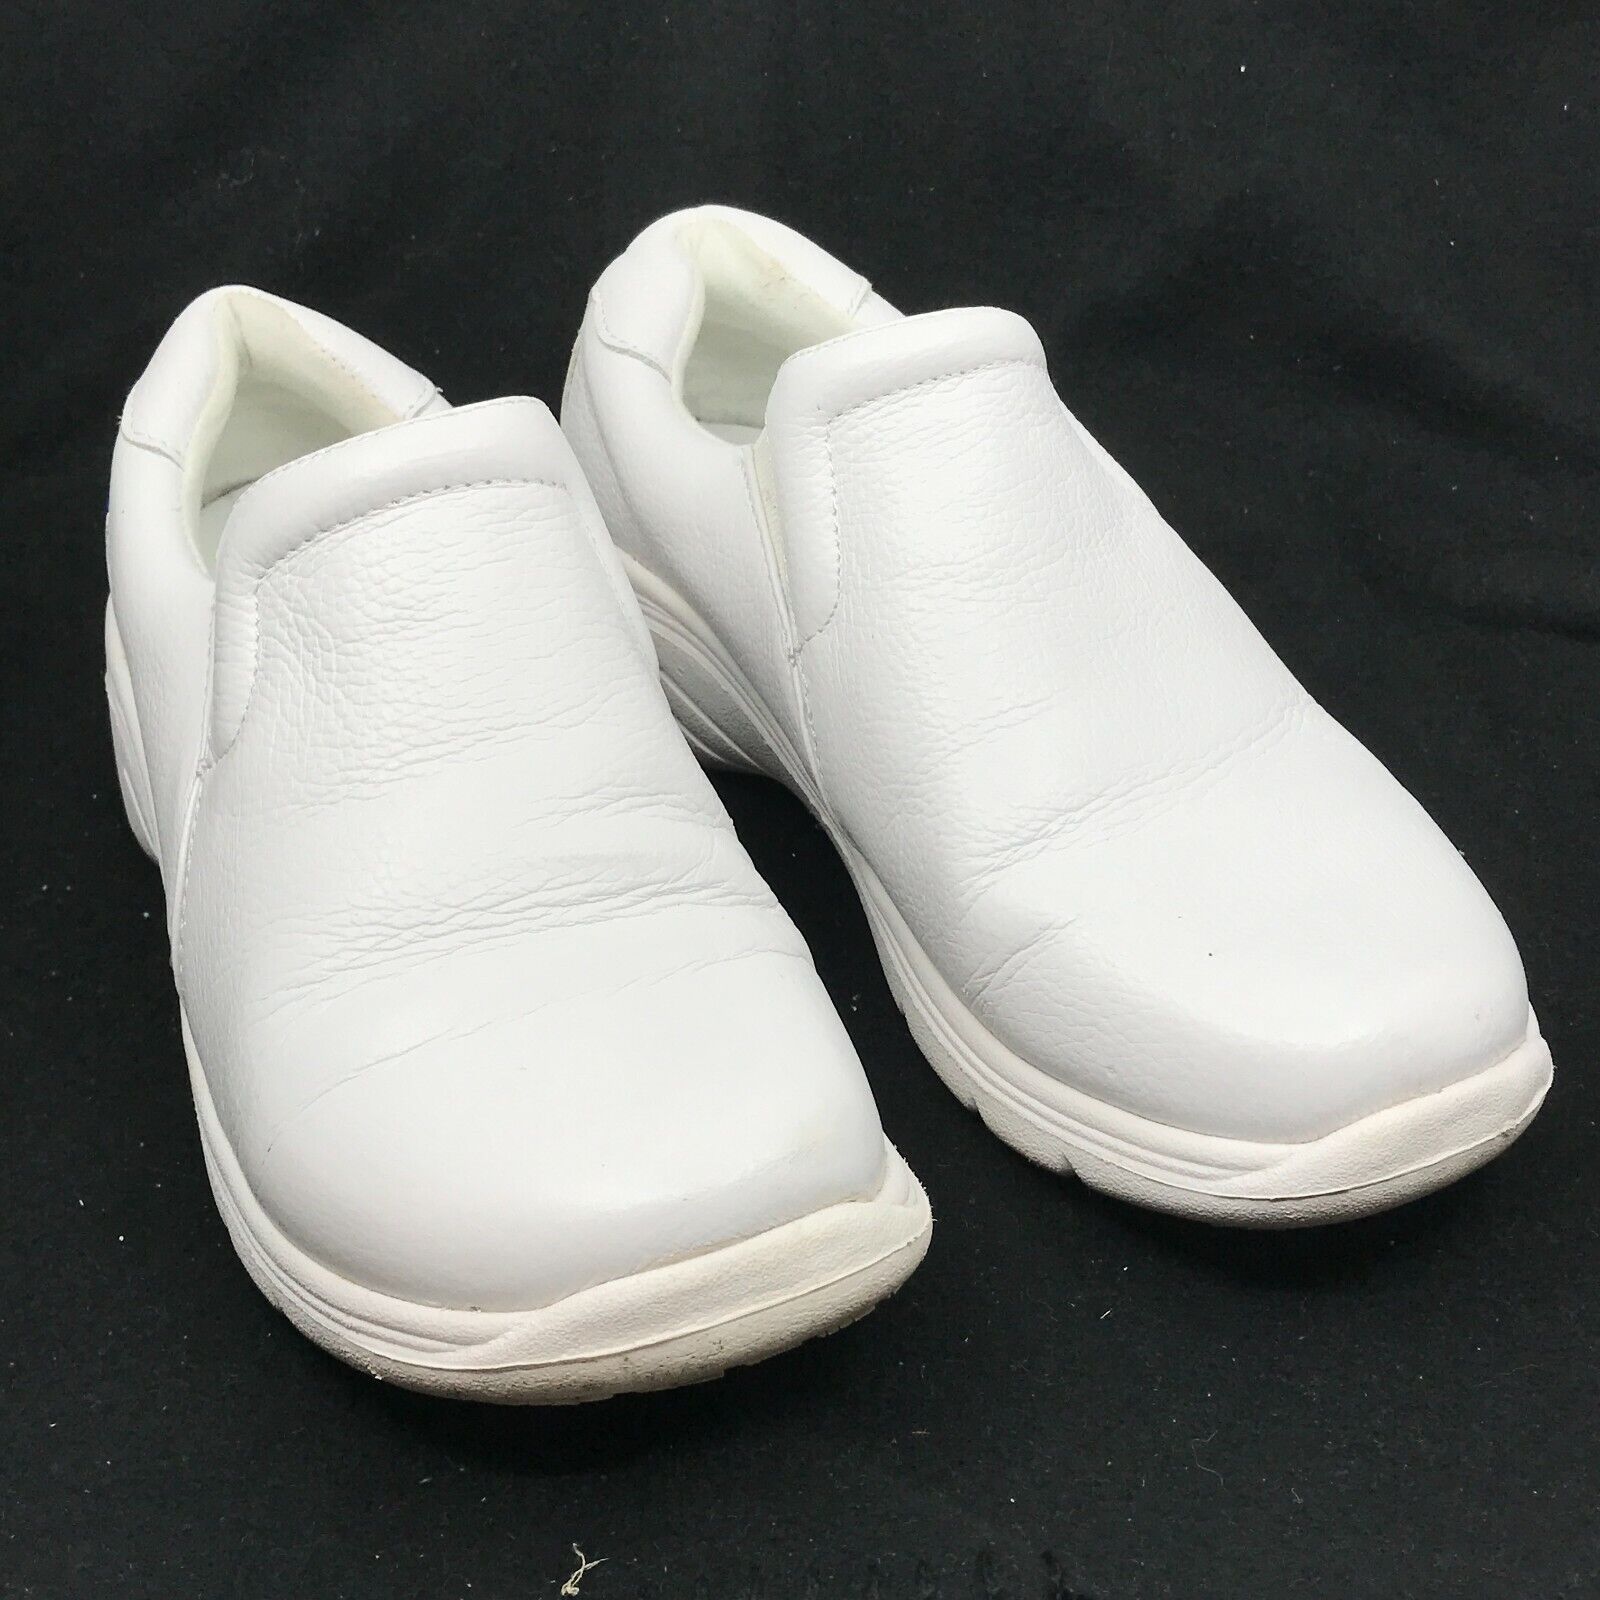 Nurse Mates Leather Slip-On Nursing Clogs Women's Size 7W White [A17]